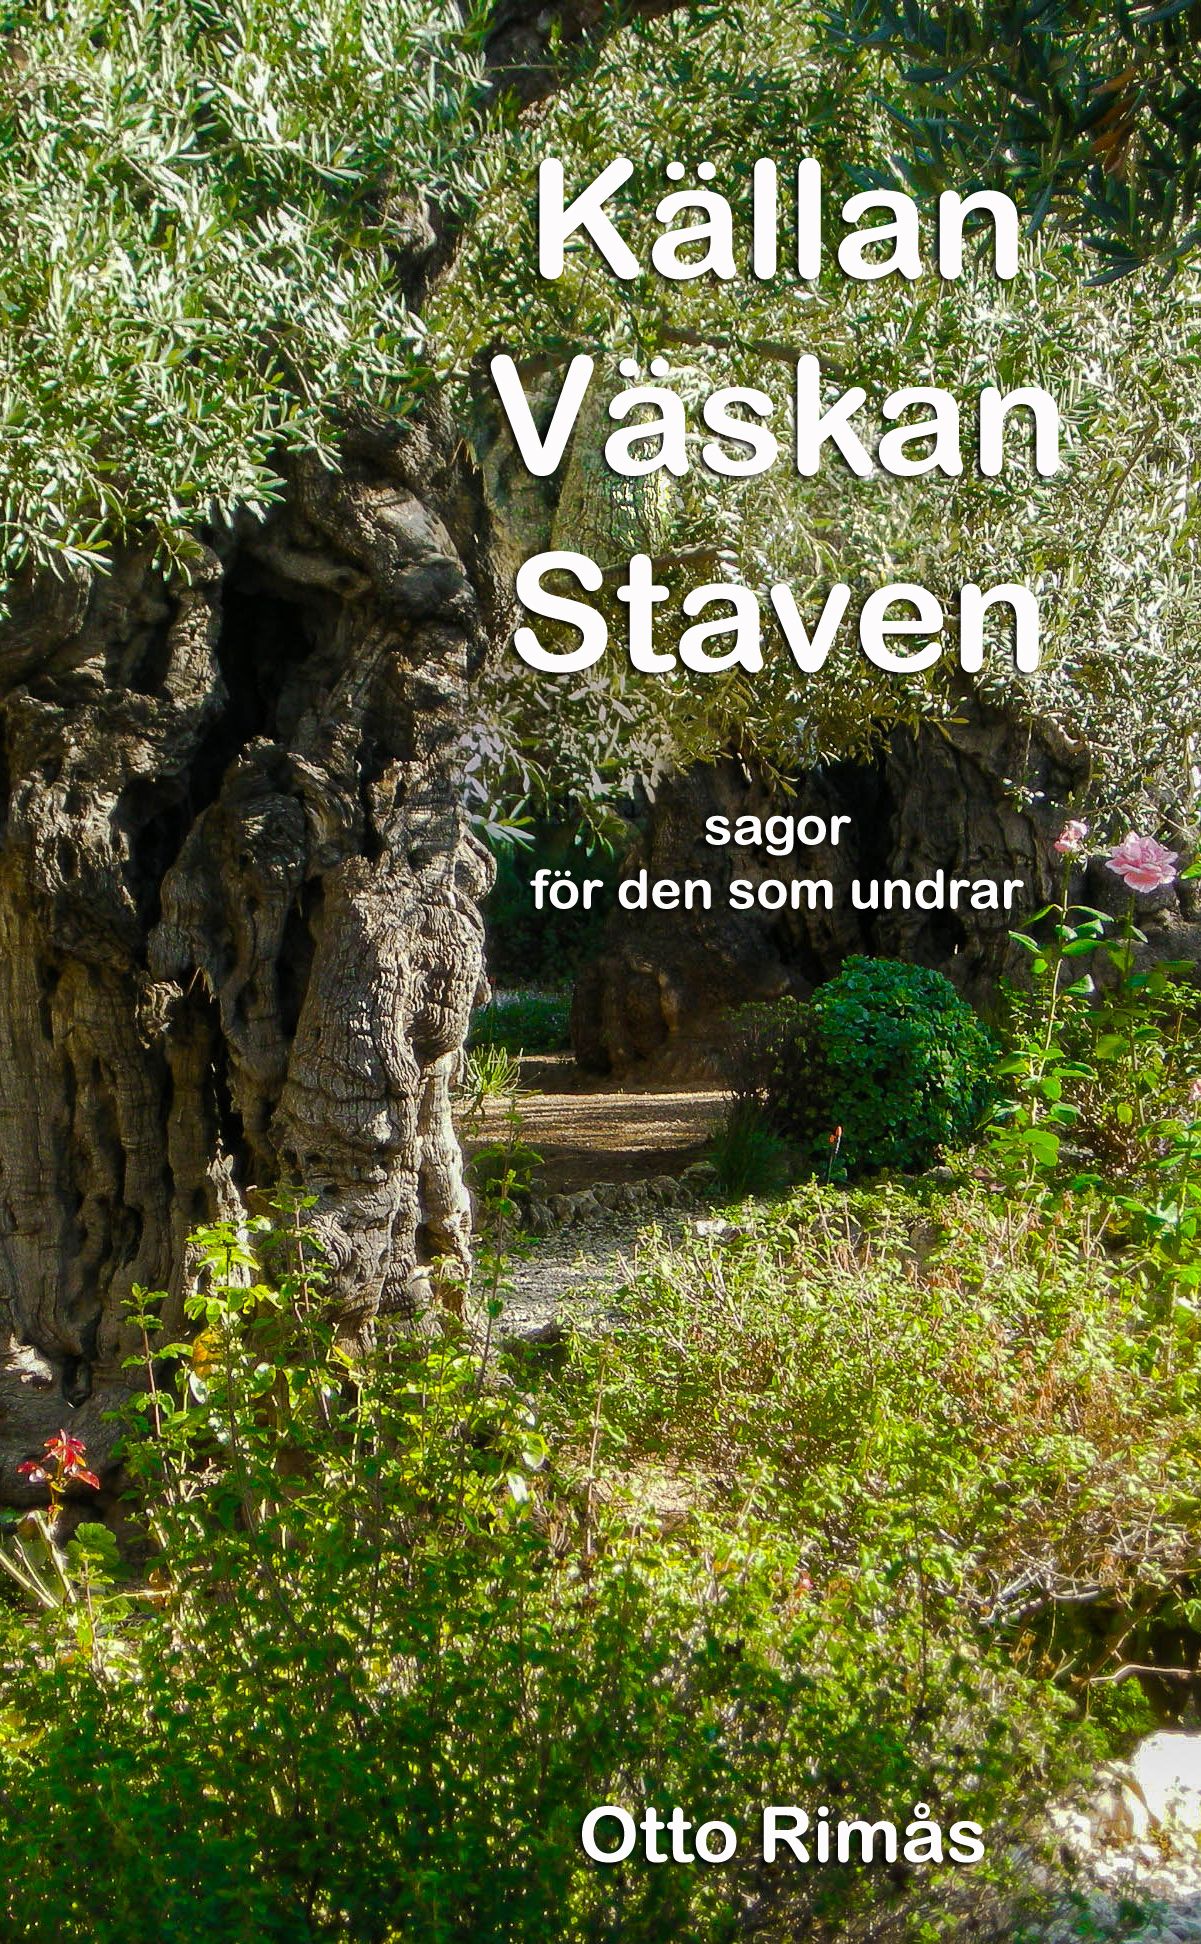 Källan Väskan Staven - sagor för den som undrar, e-bog af Otto Rimås